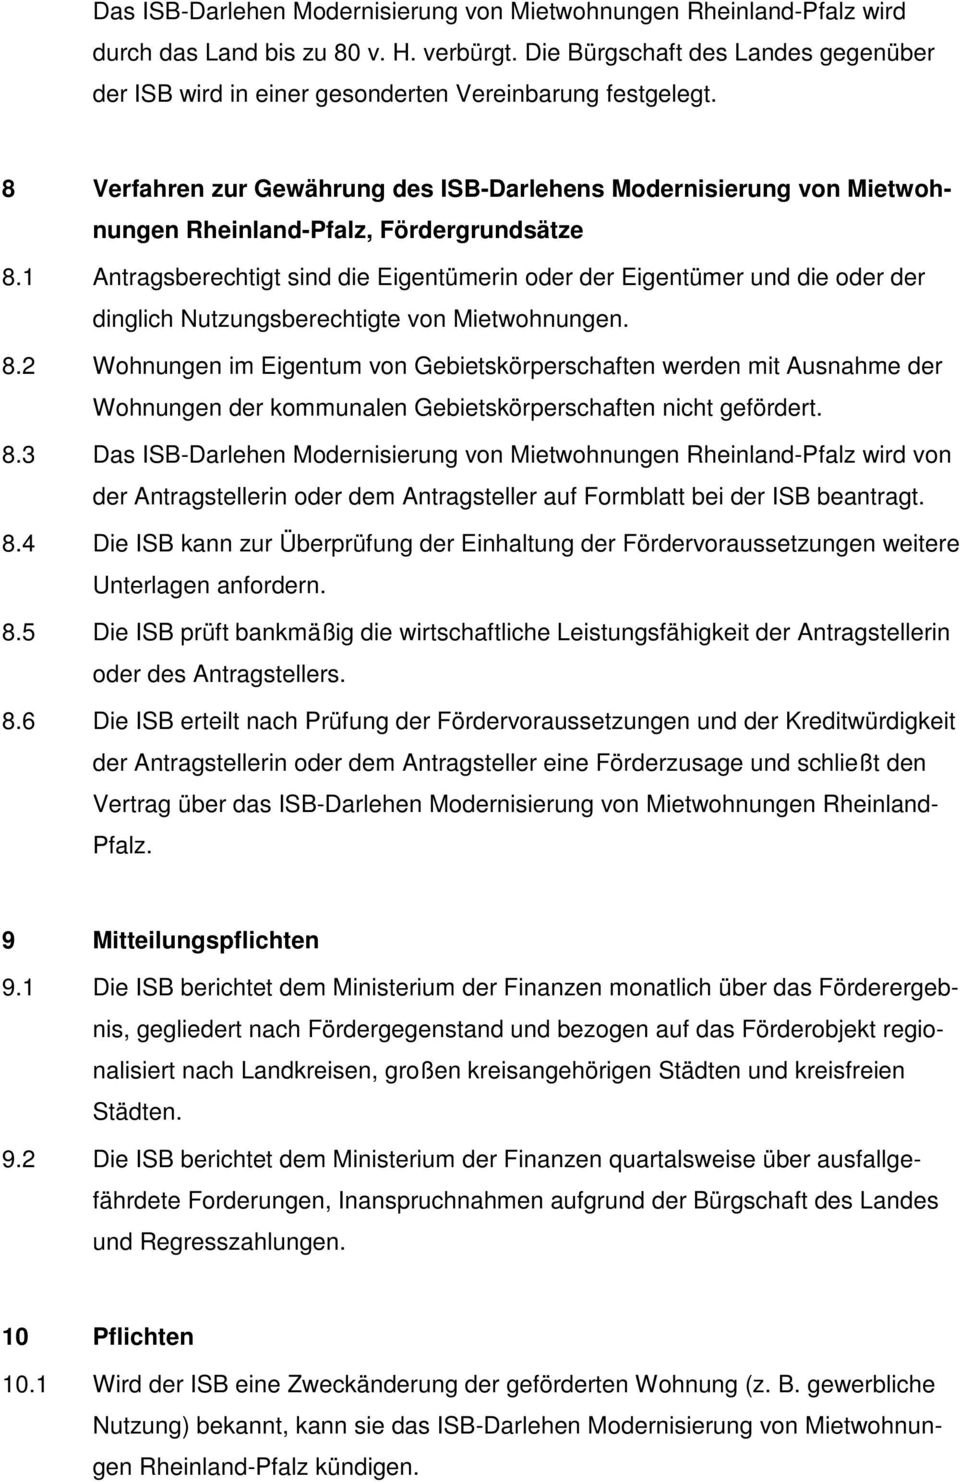 8 Verfahren zur Gewährung des ISB-Darlehens Modernisierung von Mietwohnungen Rheinland-Pfalz, Fördergrundsätze 8.